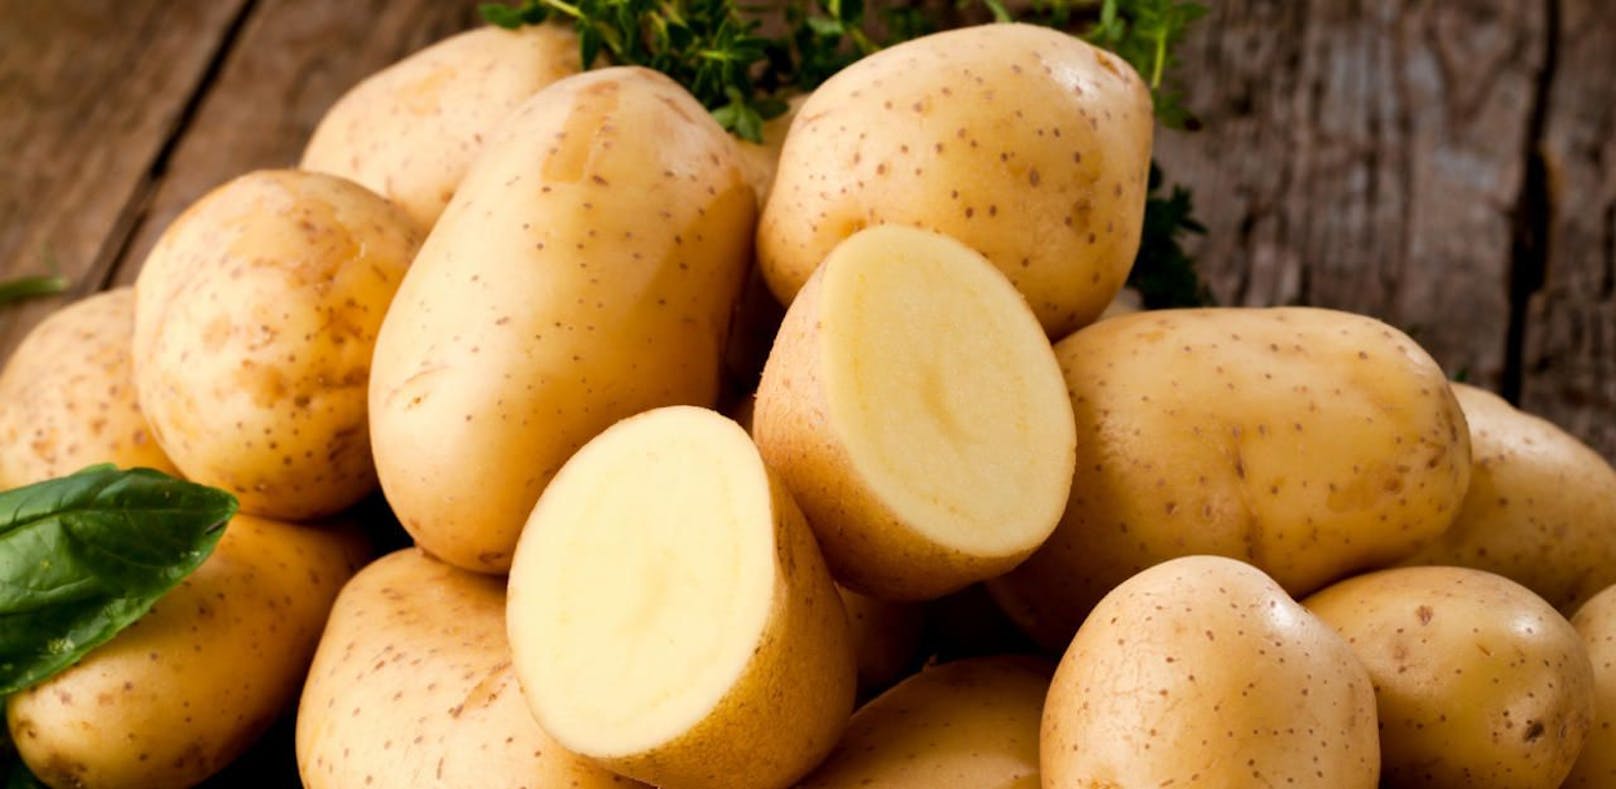 Kartoffel gehören zur Hausmannskost dazu.